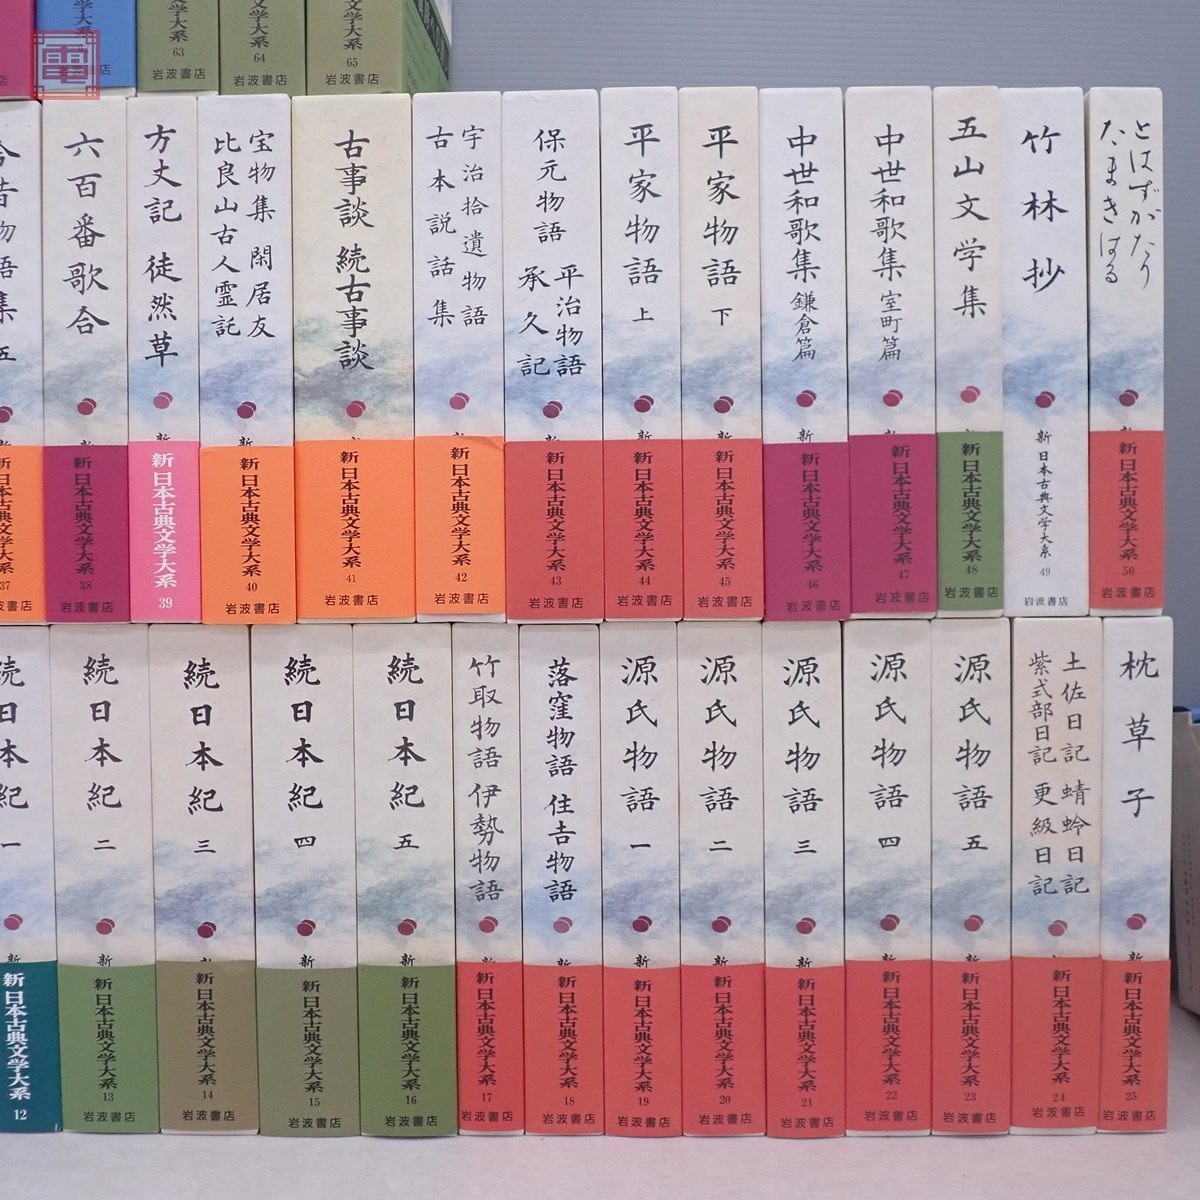 新日本古典文学大系 全100巻＋別巻5巻＋総索引 全106冊揃 函入 月報揃 